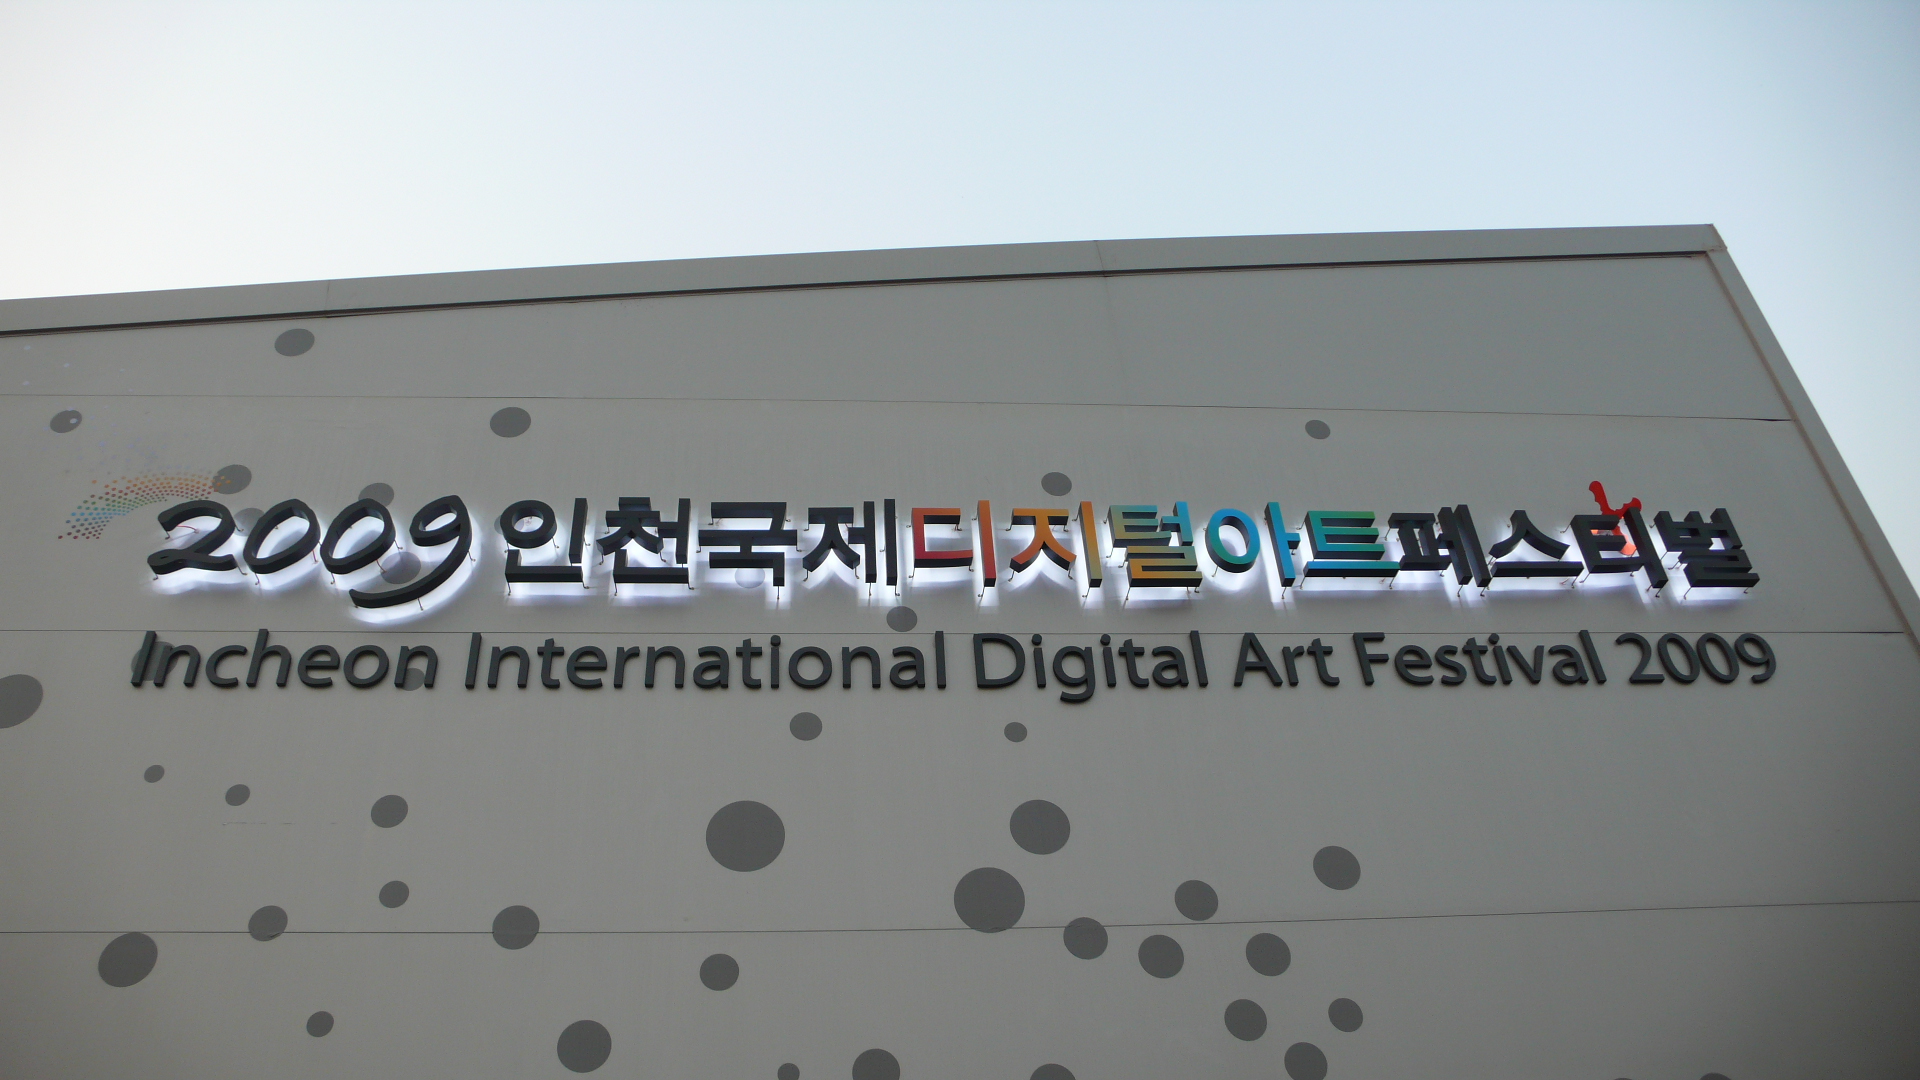 인천 국제 디지털 아트 페스티벌 2009